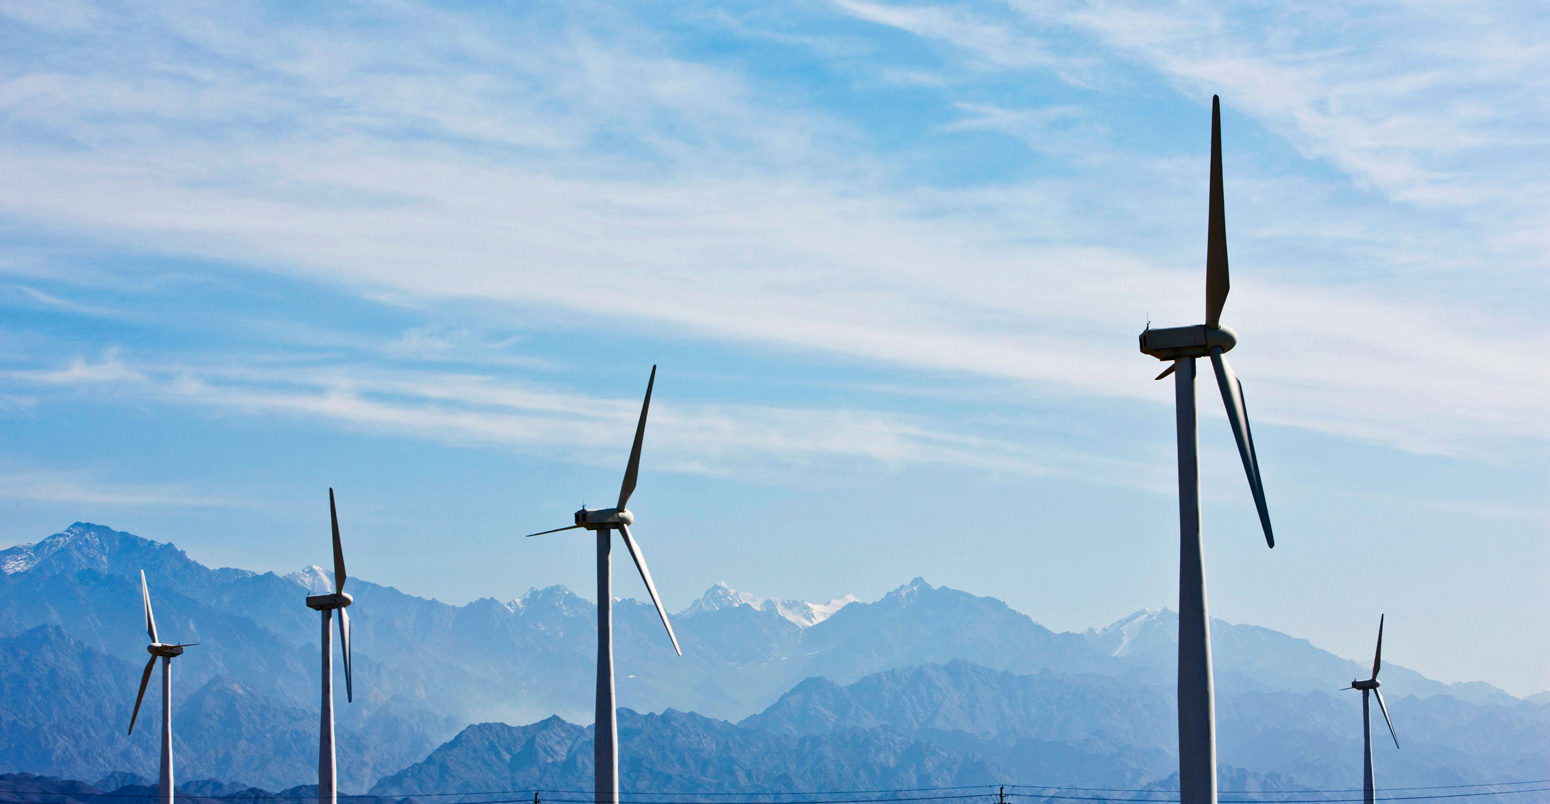 中国新疆维吾尔自治区大坂城风电场的风电场。